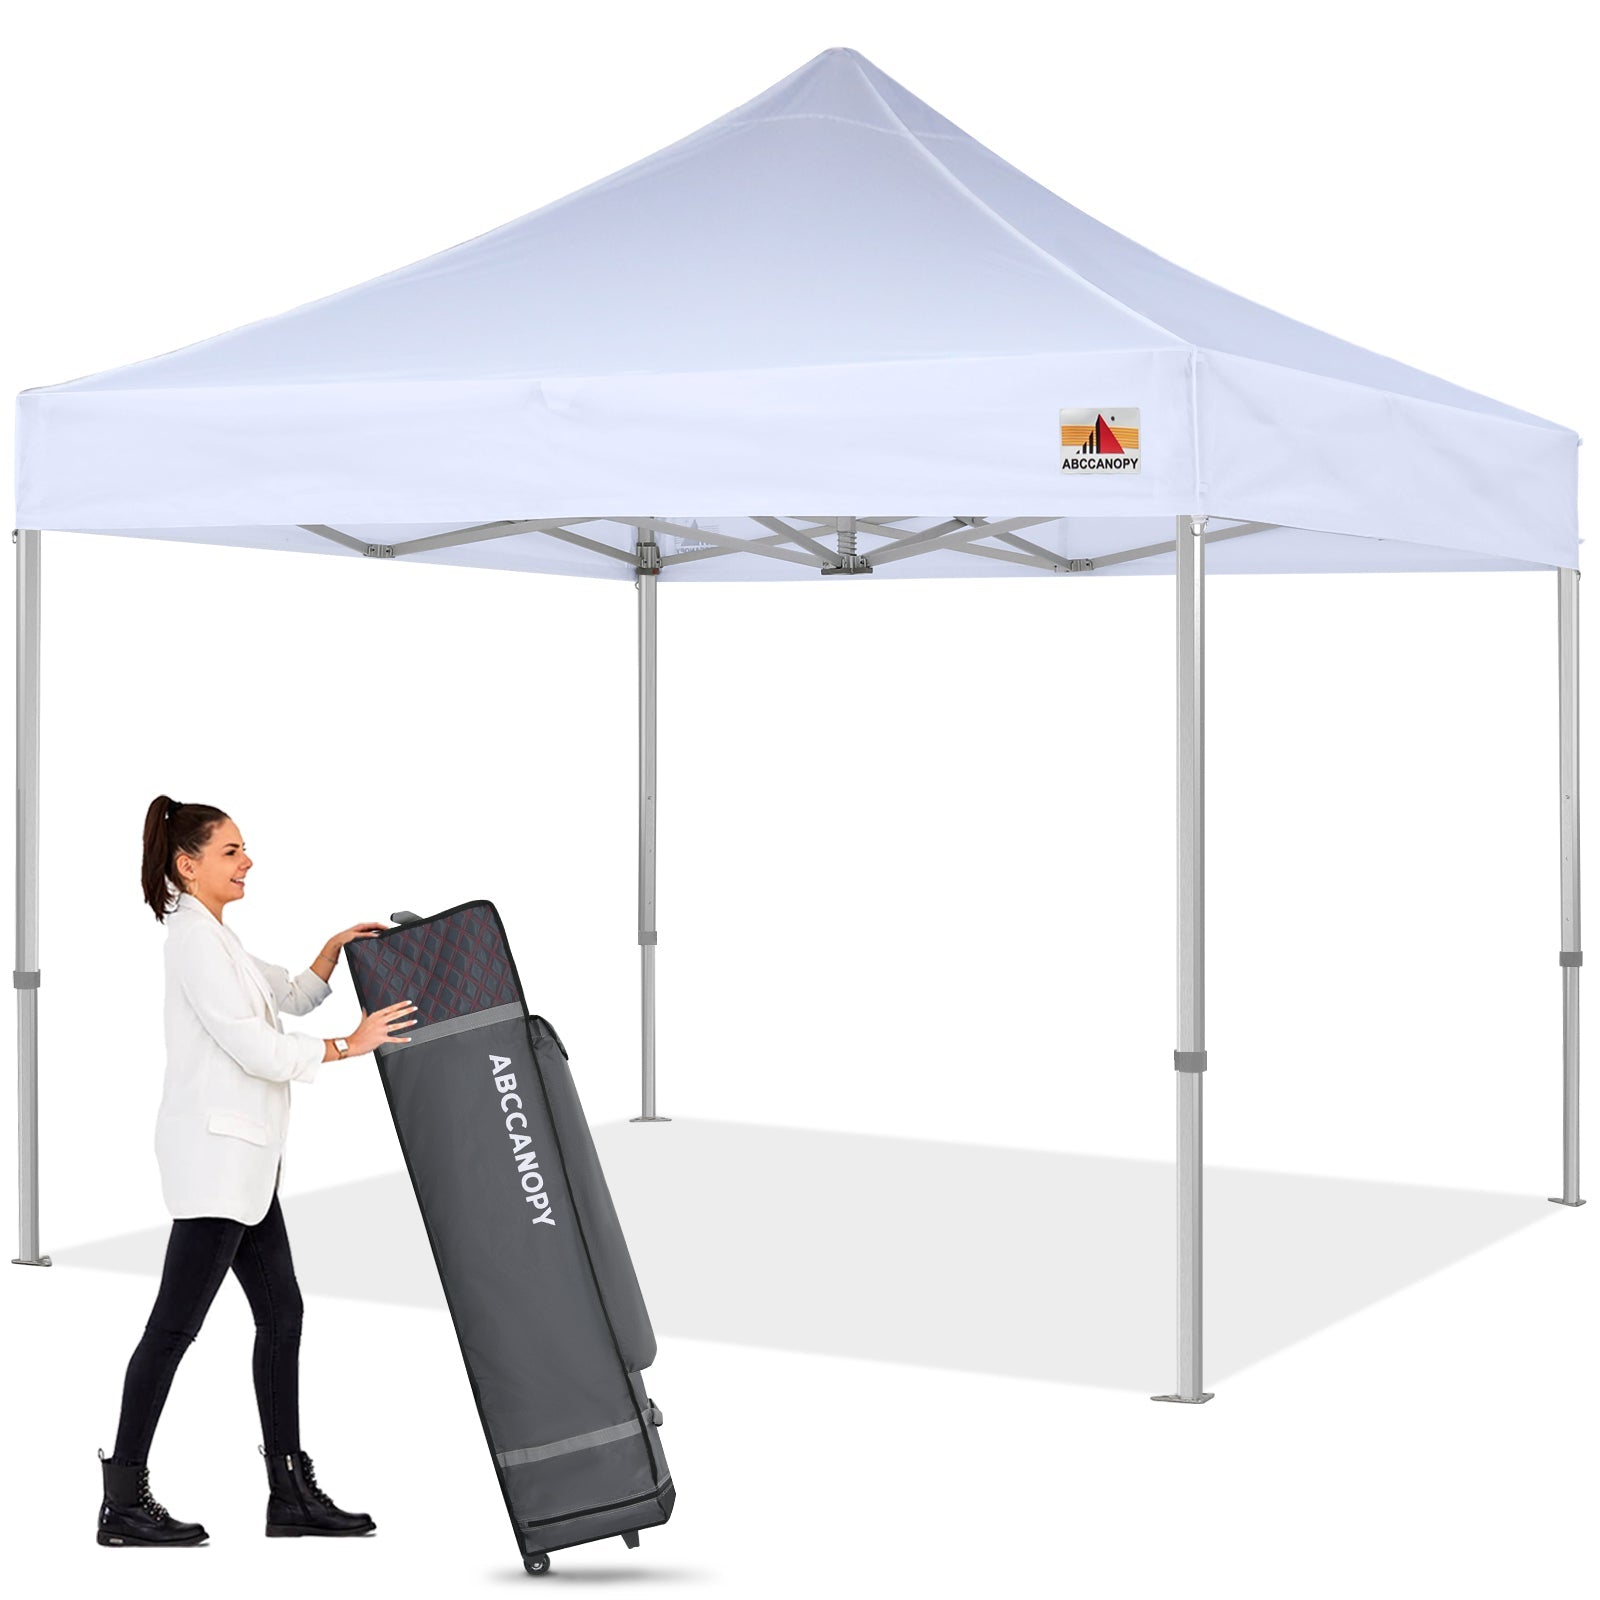 S3 Professional Octagon Super Heavy Duty Aluminum Canopy Tent